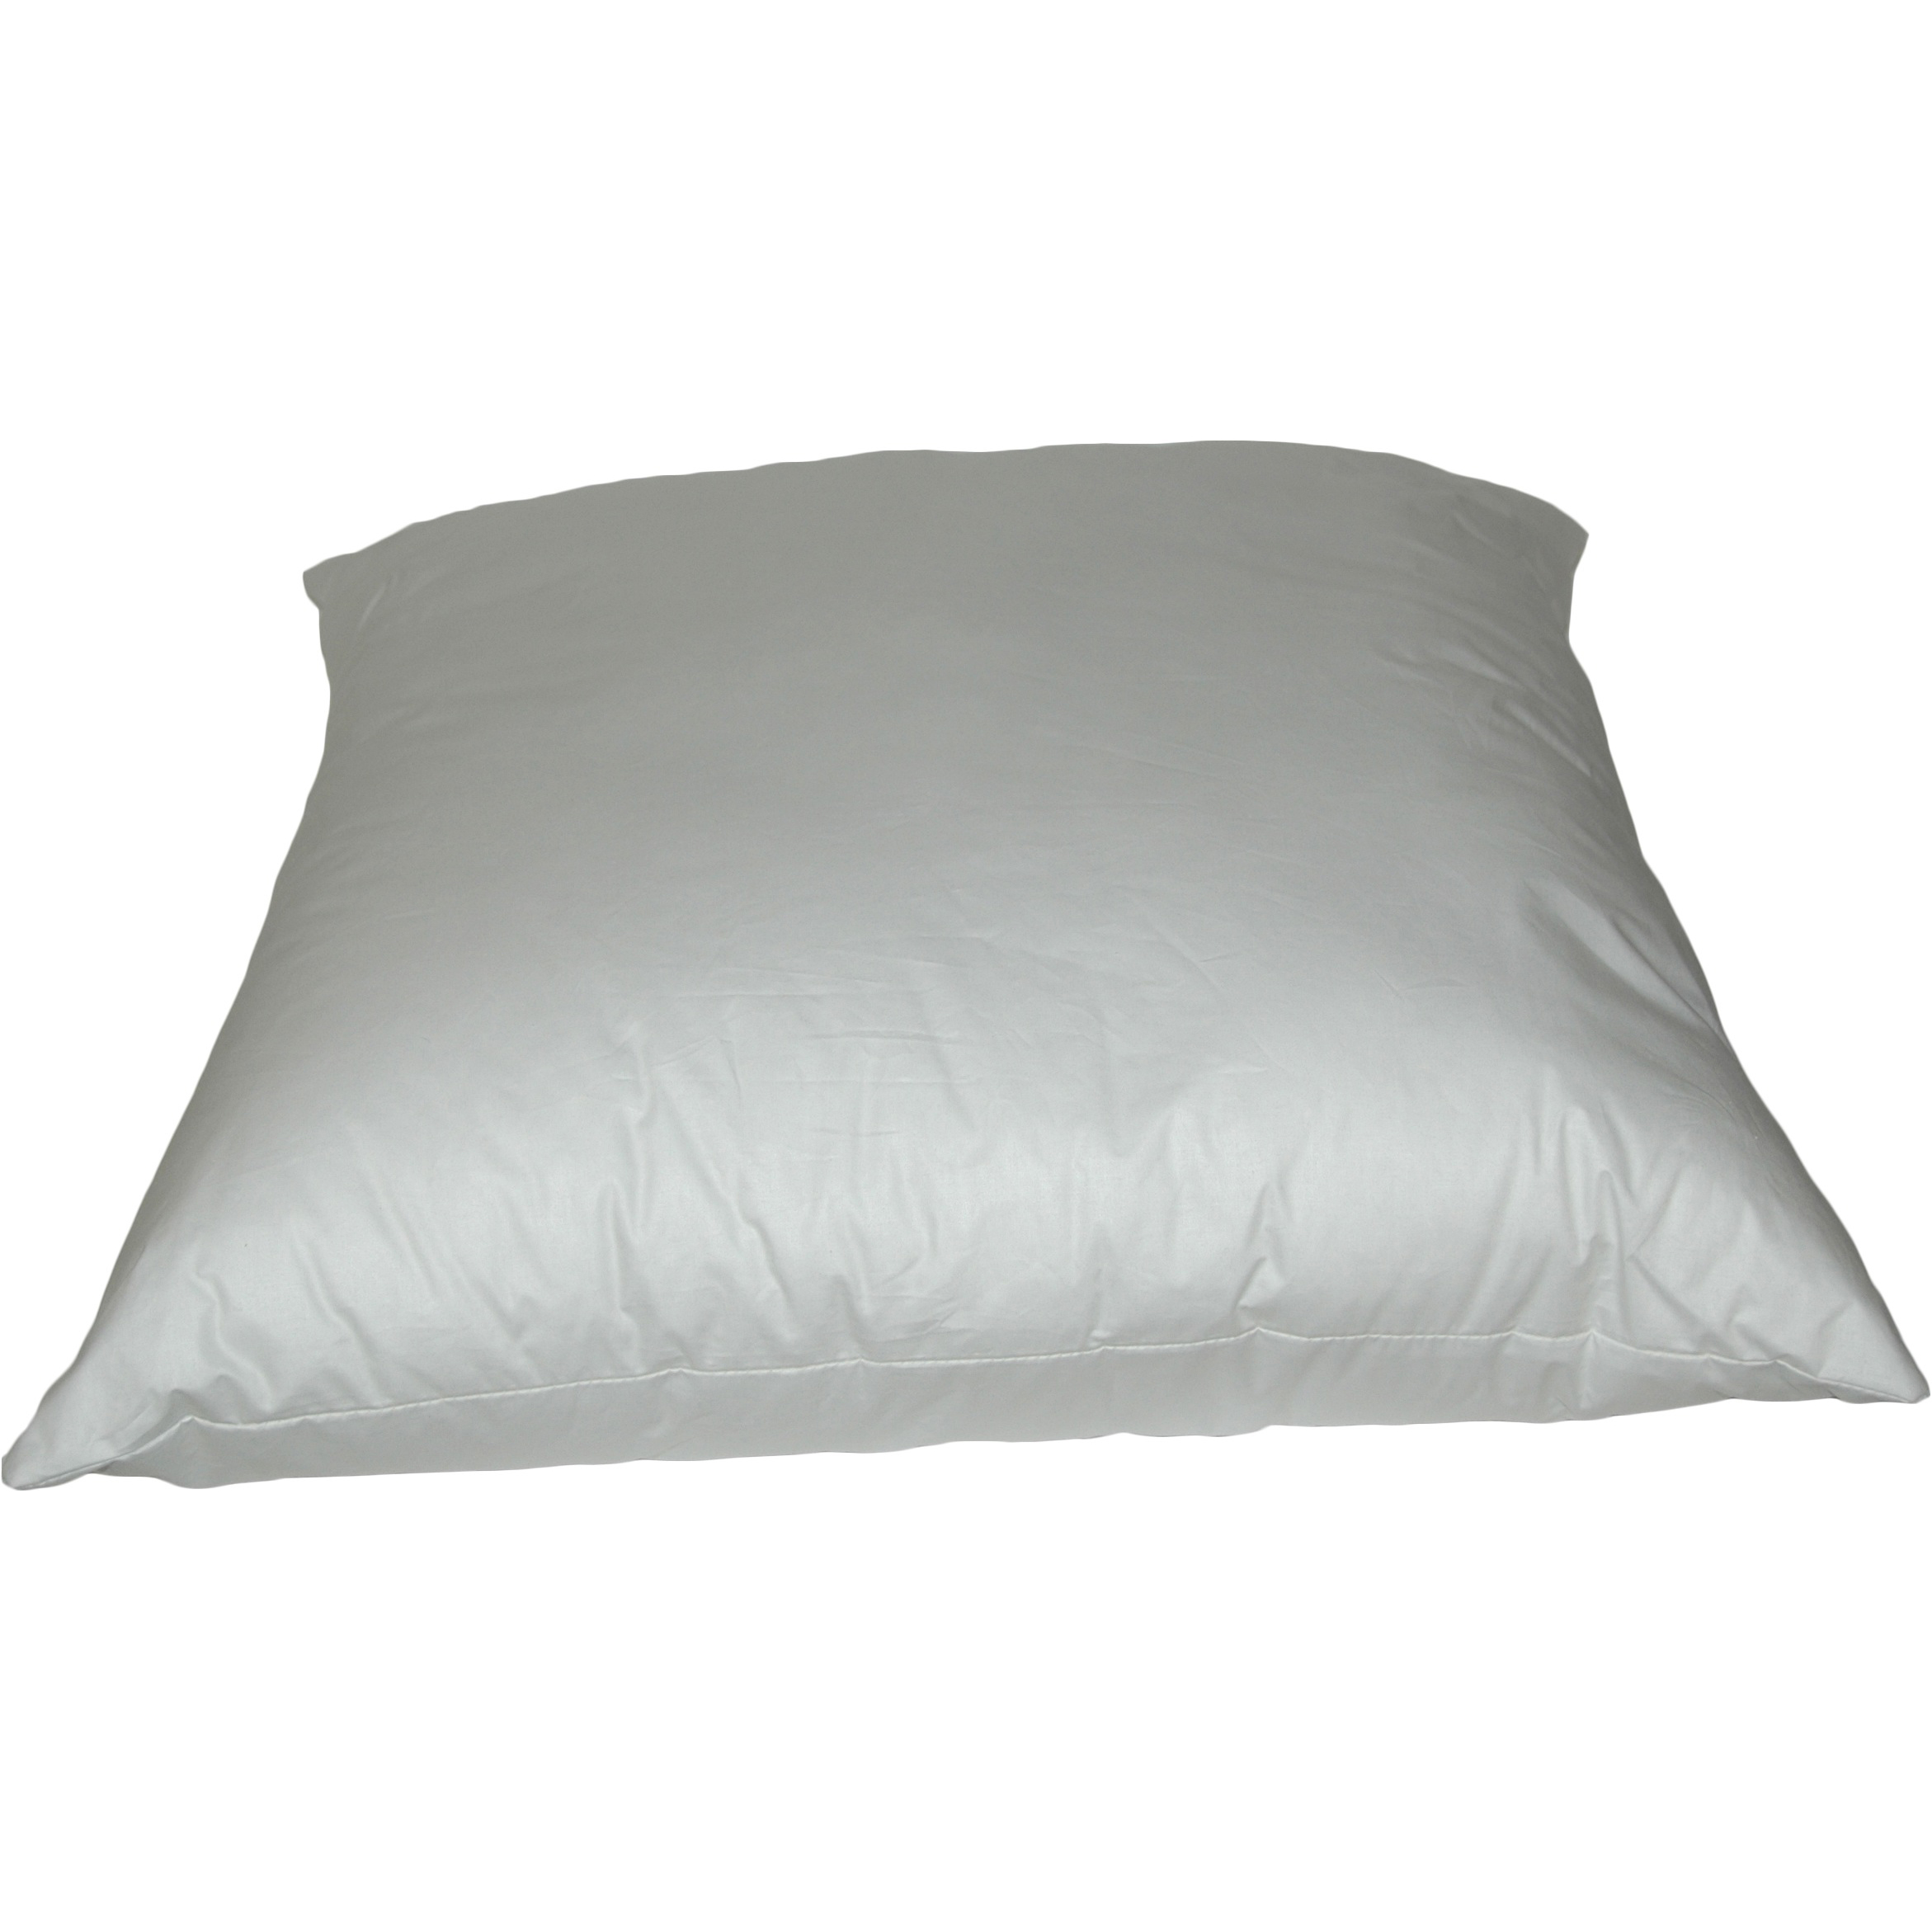 Outdoor K-Fiber Pillows 22 inch